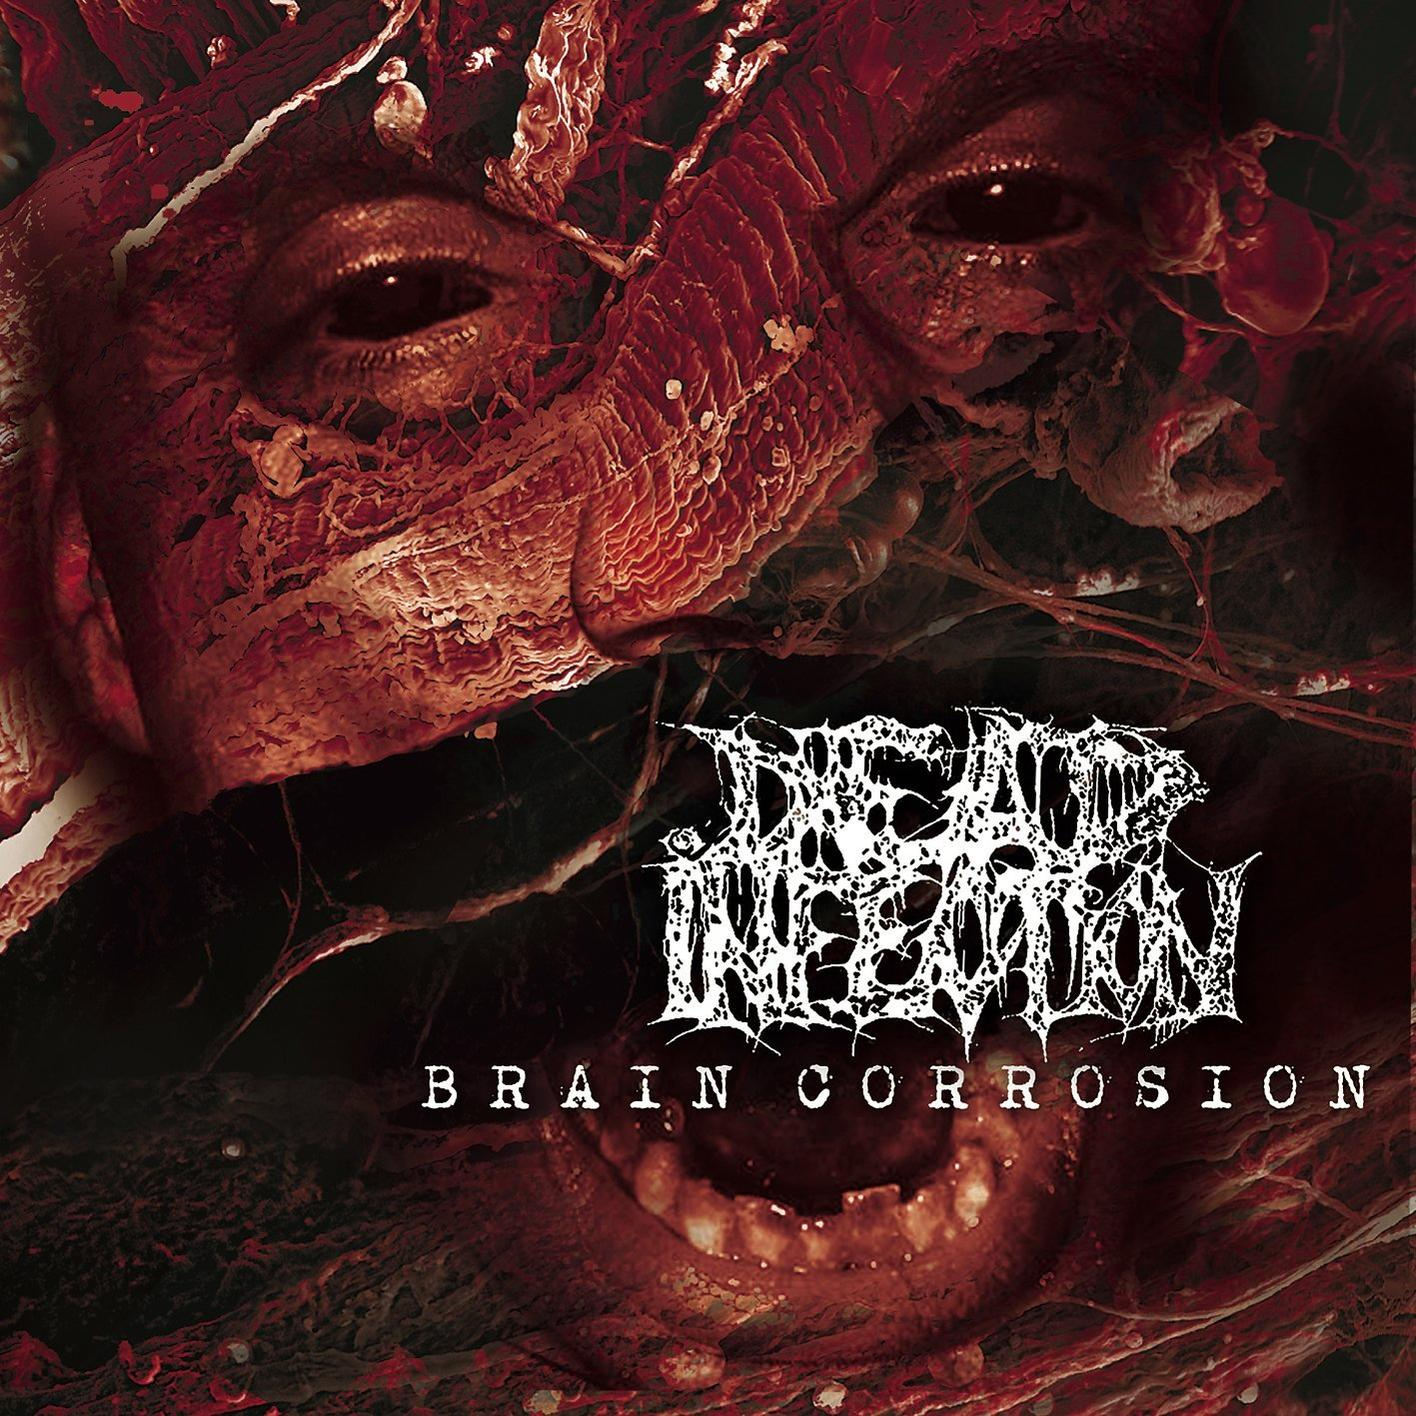 Dead Infection - Brain (Vinyl LP) - Corrosion (Vinyl)